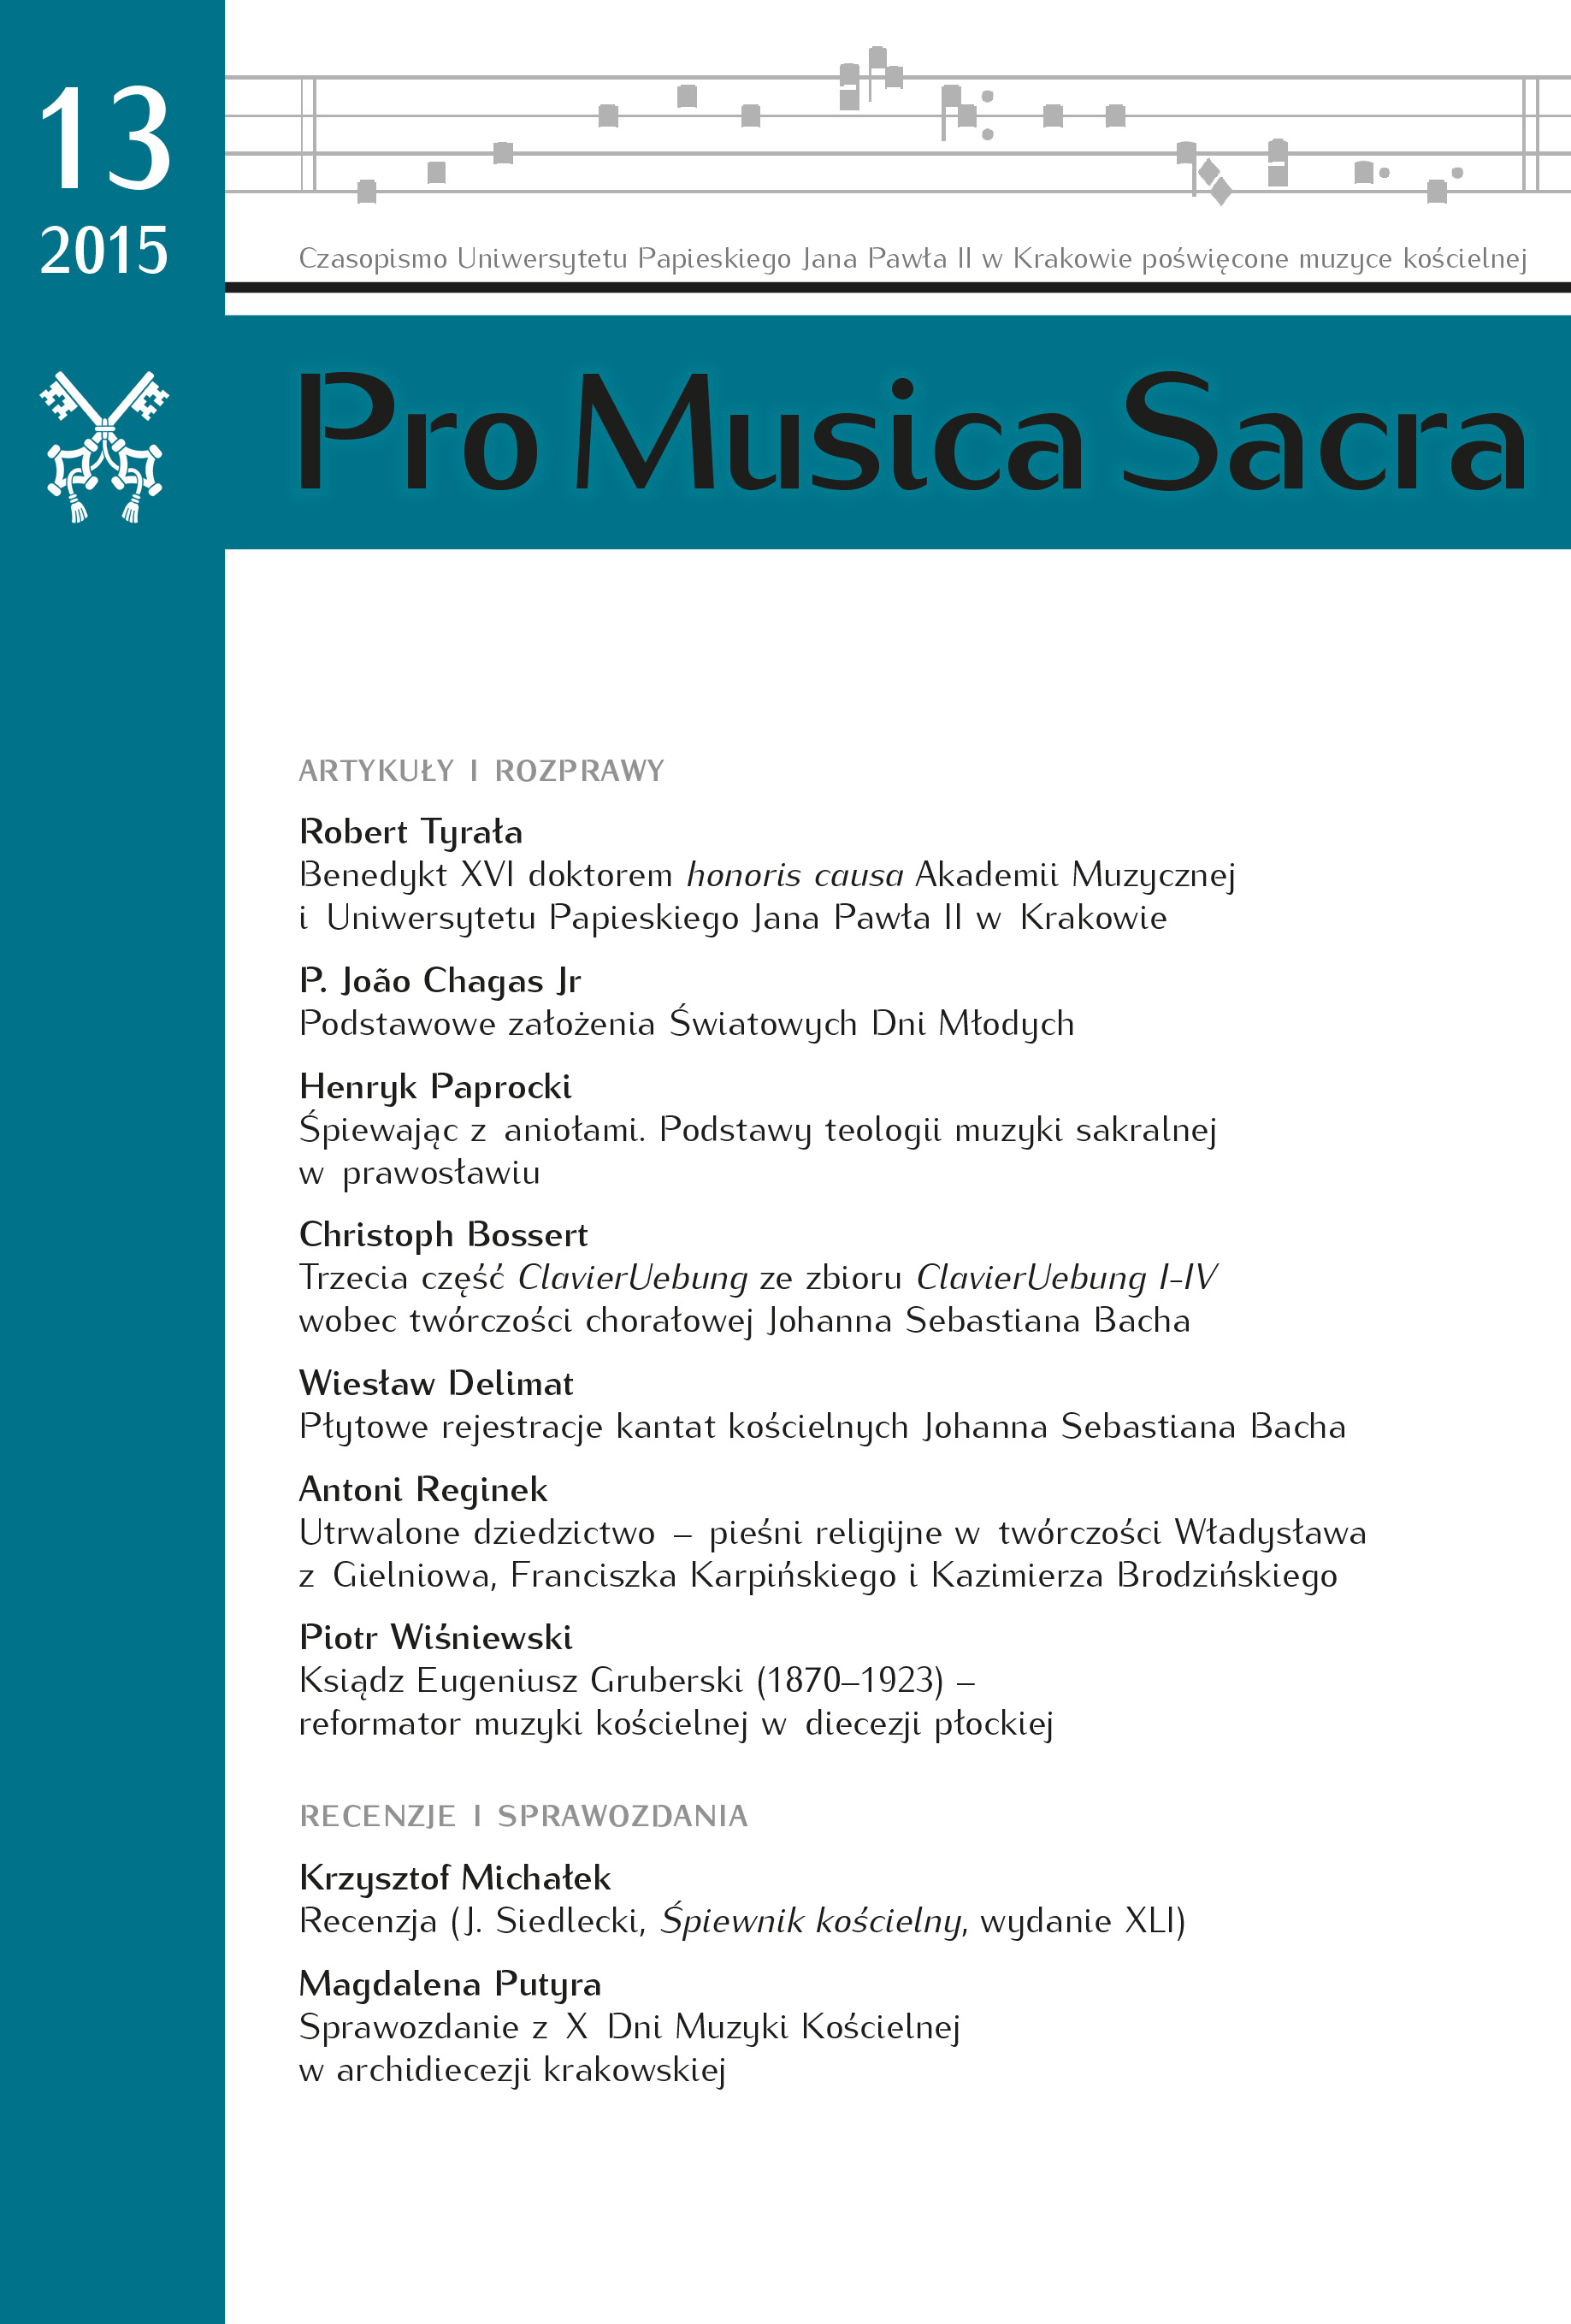 A Preserved Legacy – Religious Songs in the Works of Władysław of Gielniow, Franciszek Karpiński and Kazimierz Brodziński Cover Image